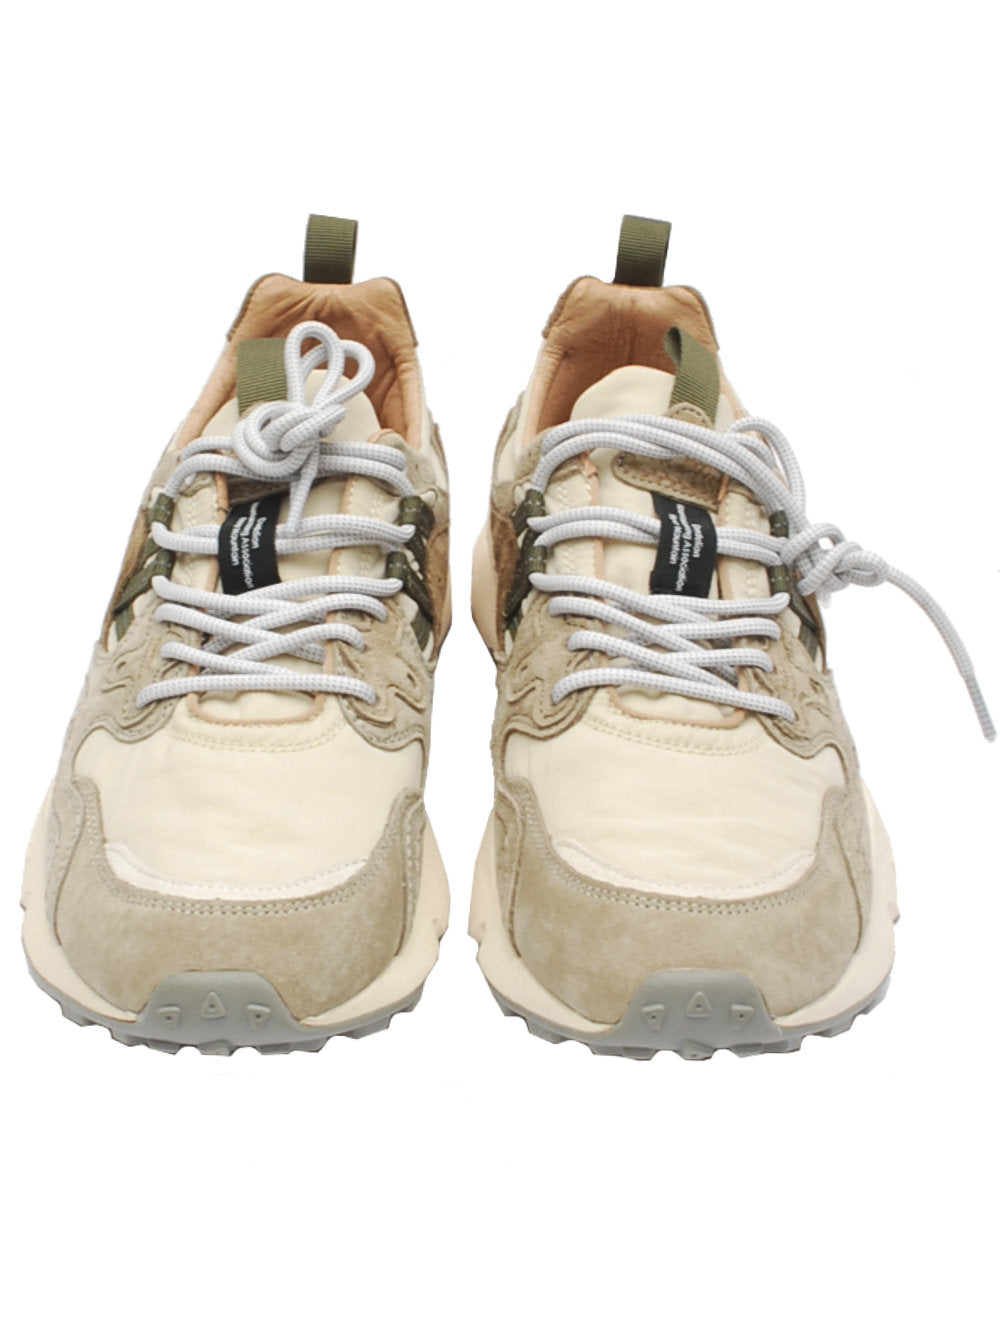 Flower mountain sneaker yamano 3 1n30 off white-beige pe24